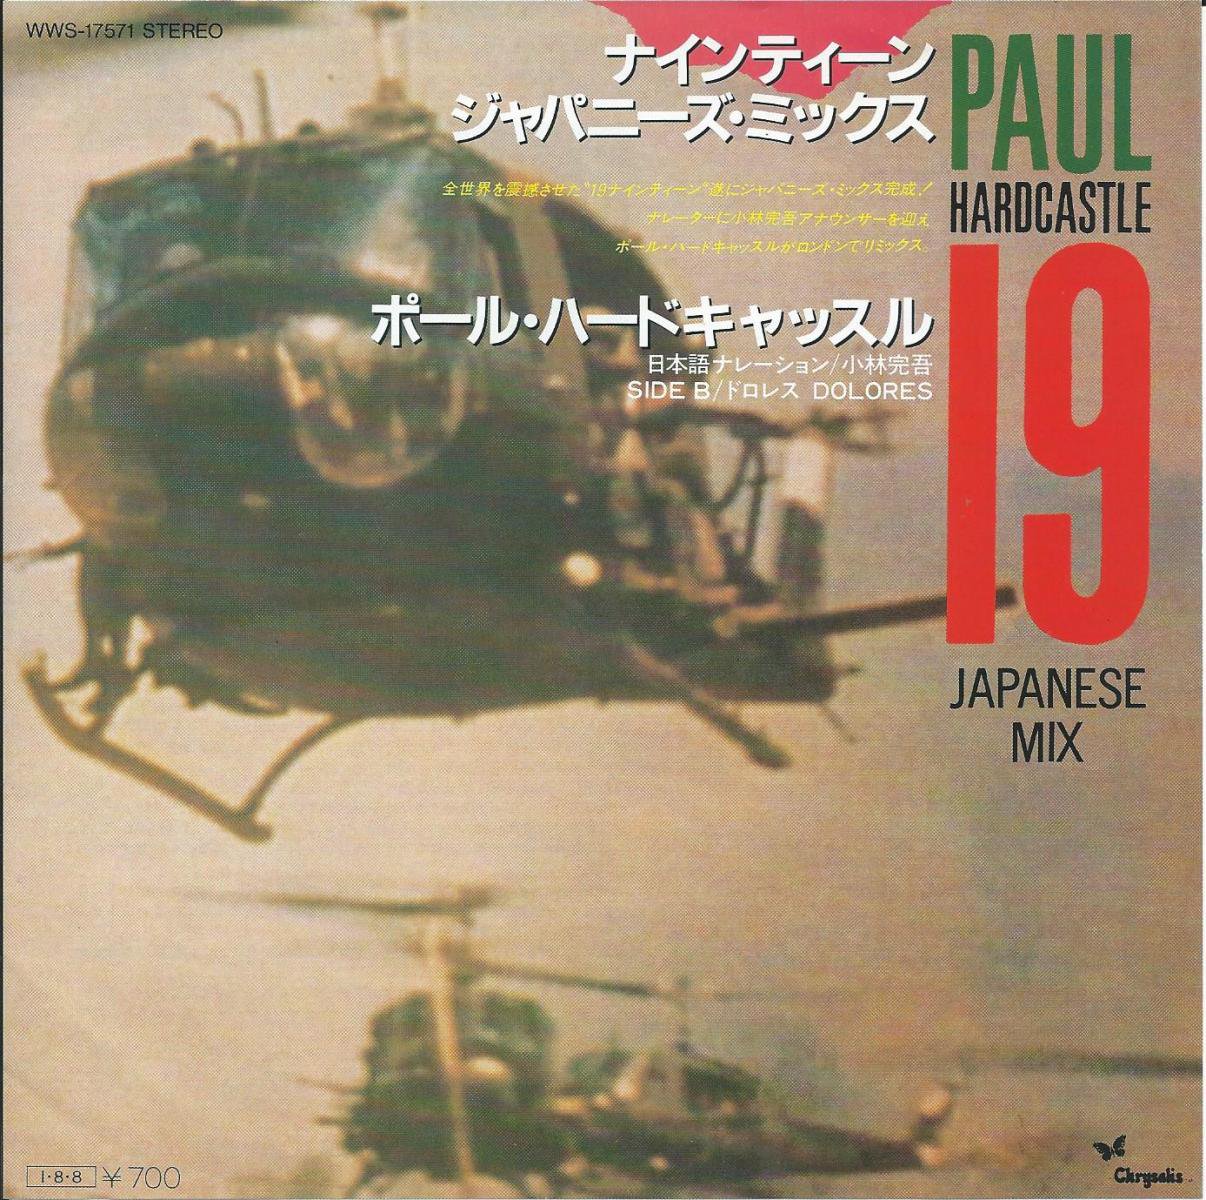 564円 ポール・ハードキャッスル PAUL HARDCASTLE / ナインティーン ジャパニーズ・ミックス 19 JAPANESE MIX (7) -  HIP TANK RECORDS